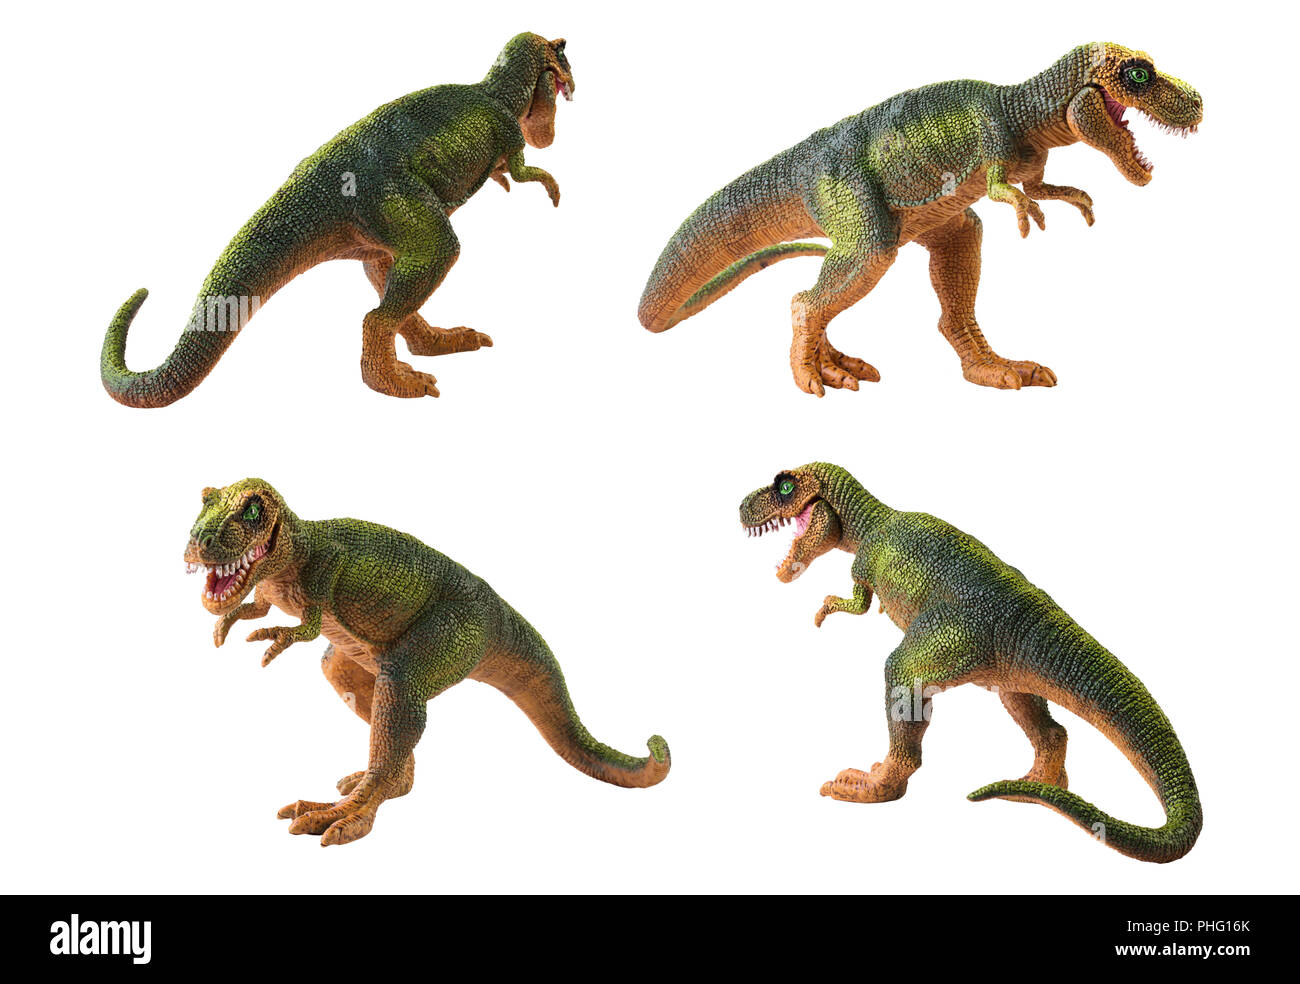 Dinosaure en plastique jouet tirex isolé sur fond blanc Banque D'Images